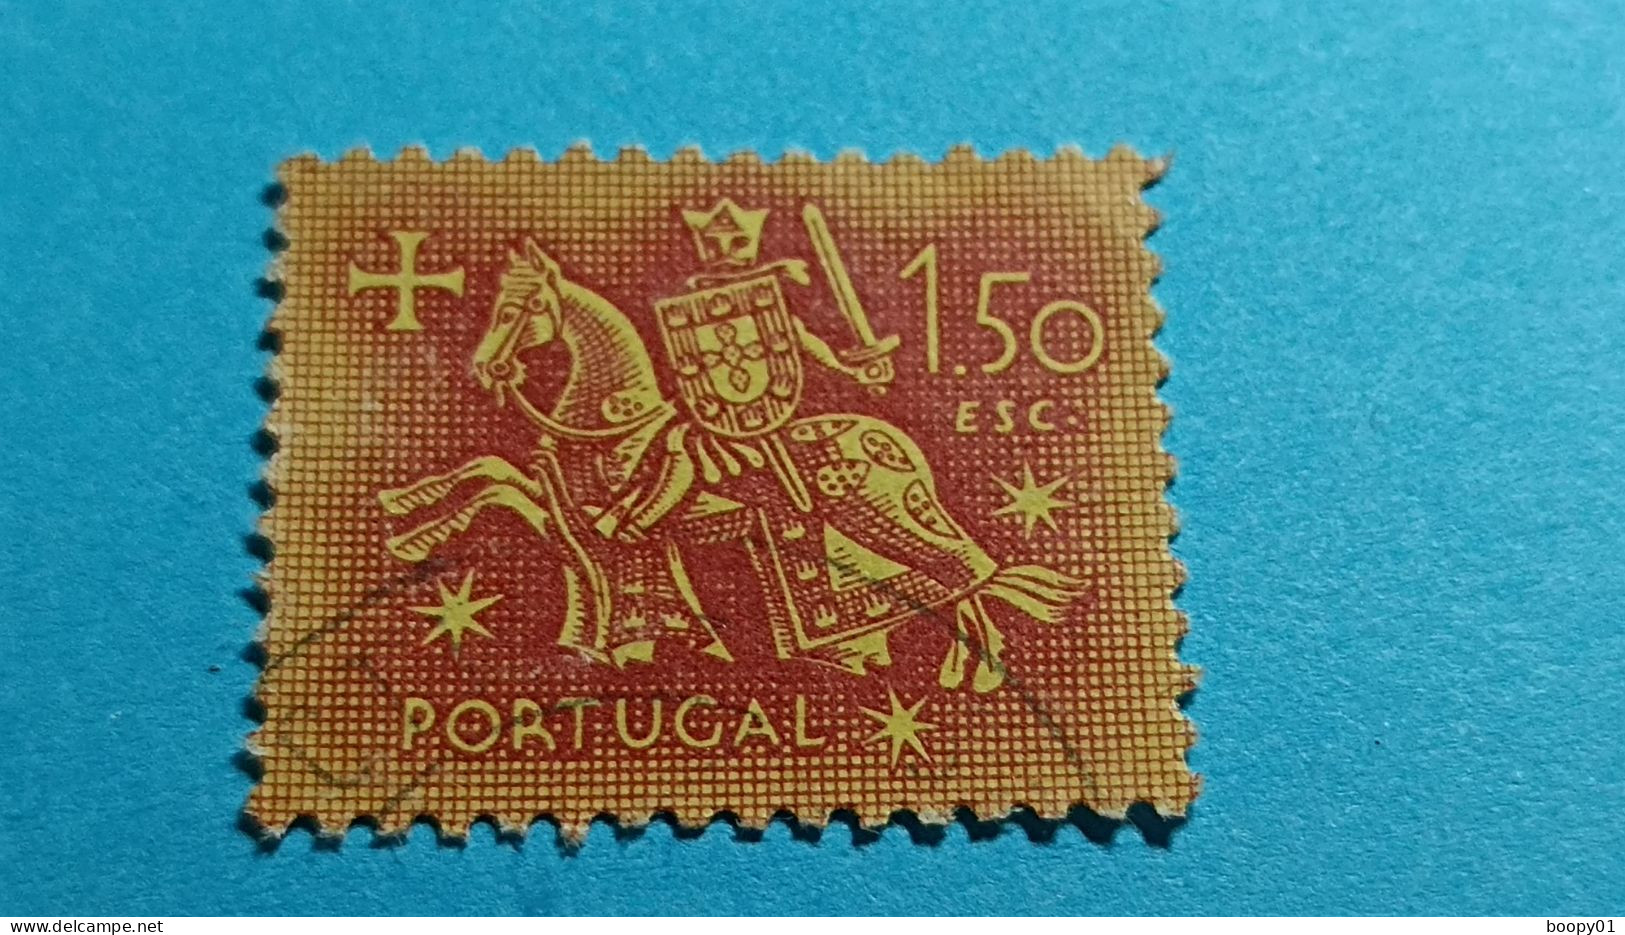 PORTUGAL - Timbre 1953 : Sceau équestre De Denis 1er De Portugal (Dinis Ou Diniz) - 1.50 Escudo - Gebruikt